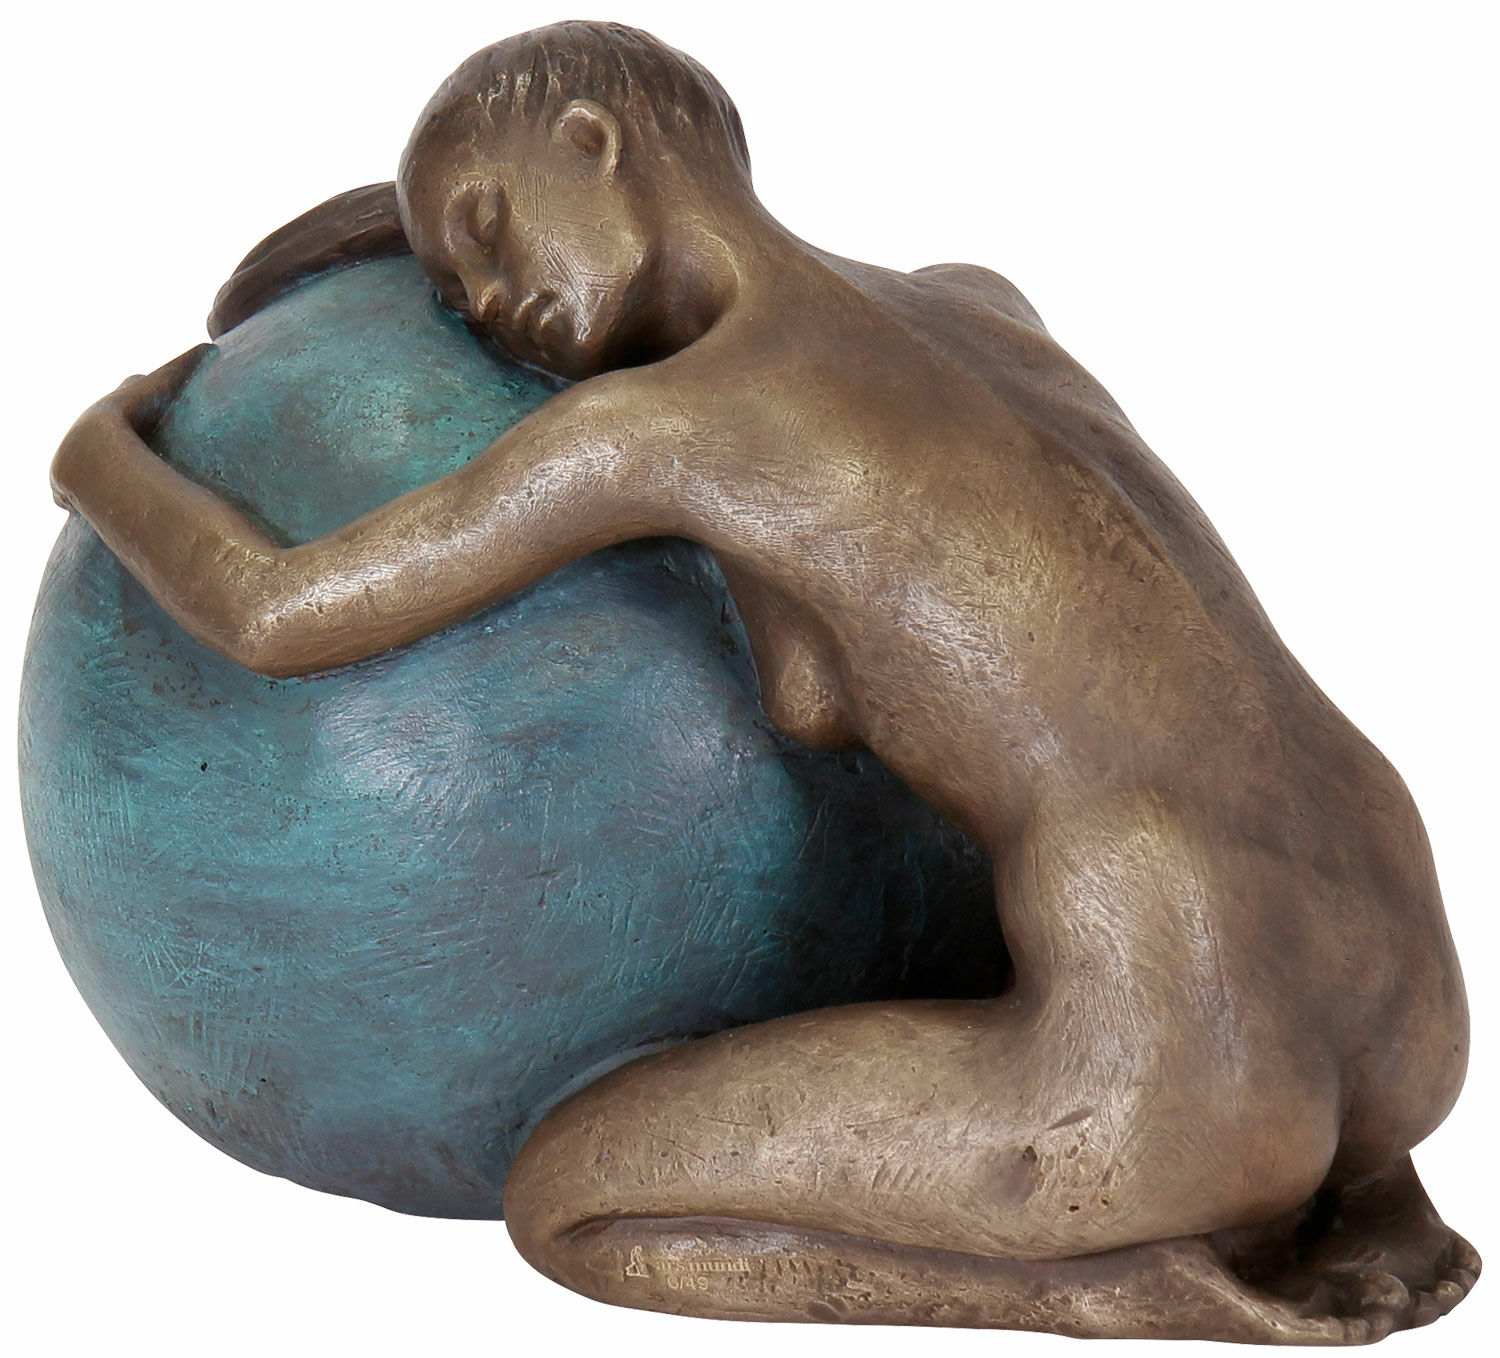 Sculpture "Embrace", bronze by Sorina von Keyserling